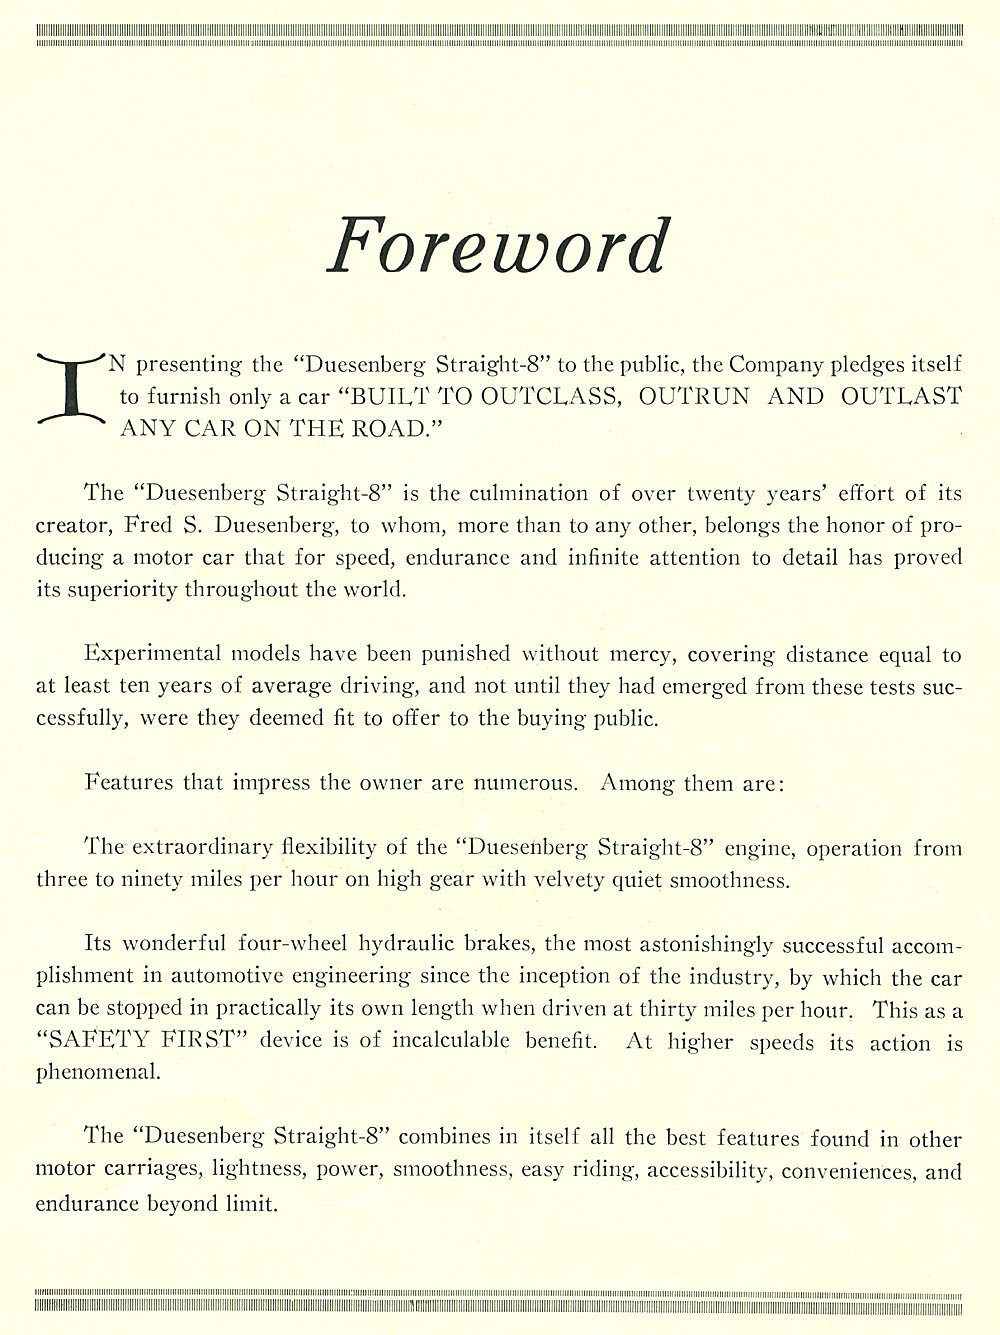 1922 Duesenberg Model A Brochure Page 3